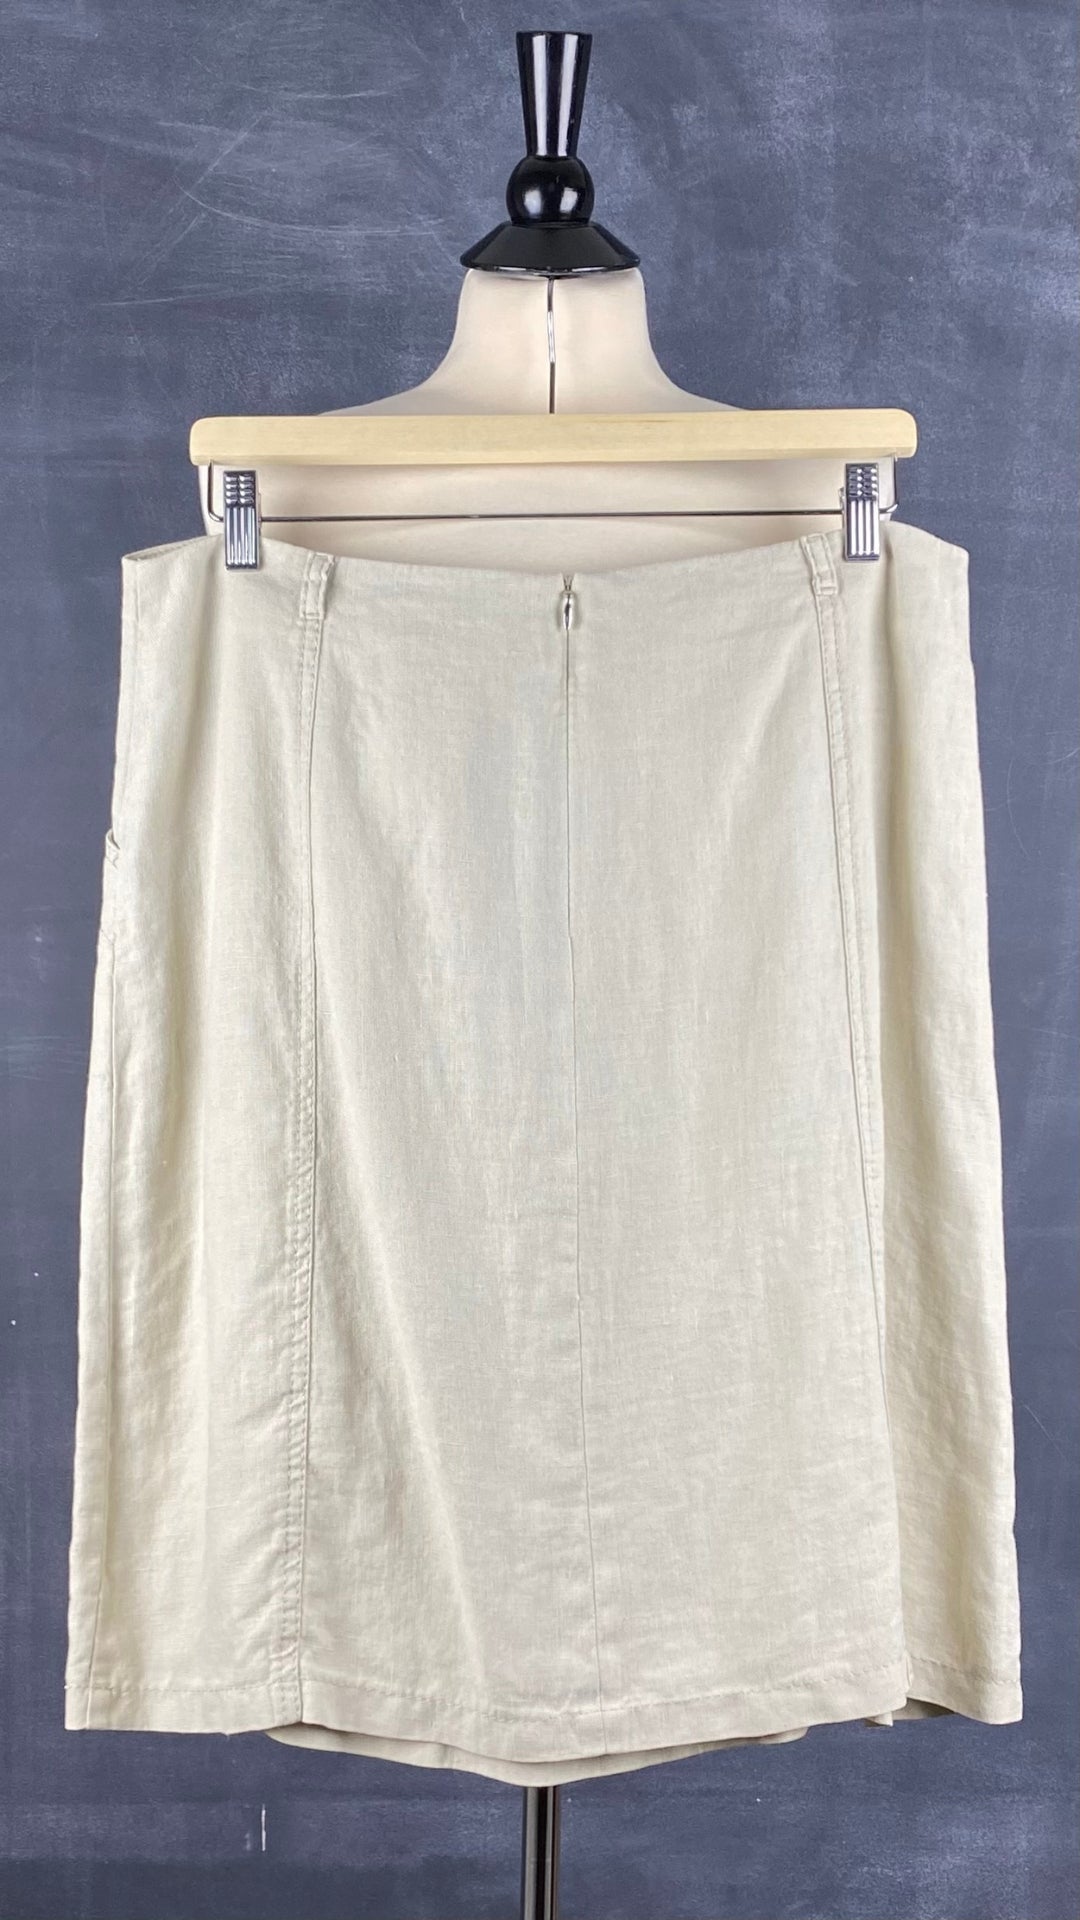 Jupe beige sable en lin Atelier Gardeur, taille 12 (large). Vue de dos.